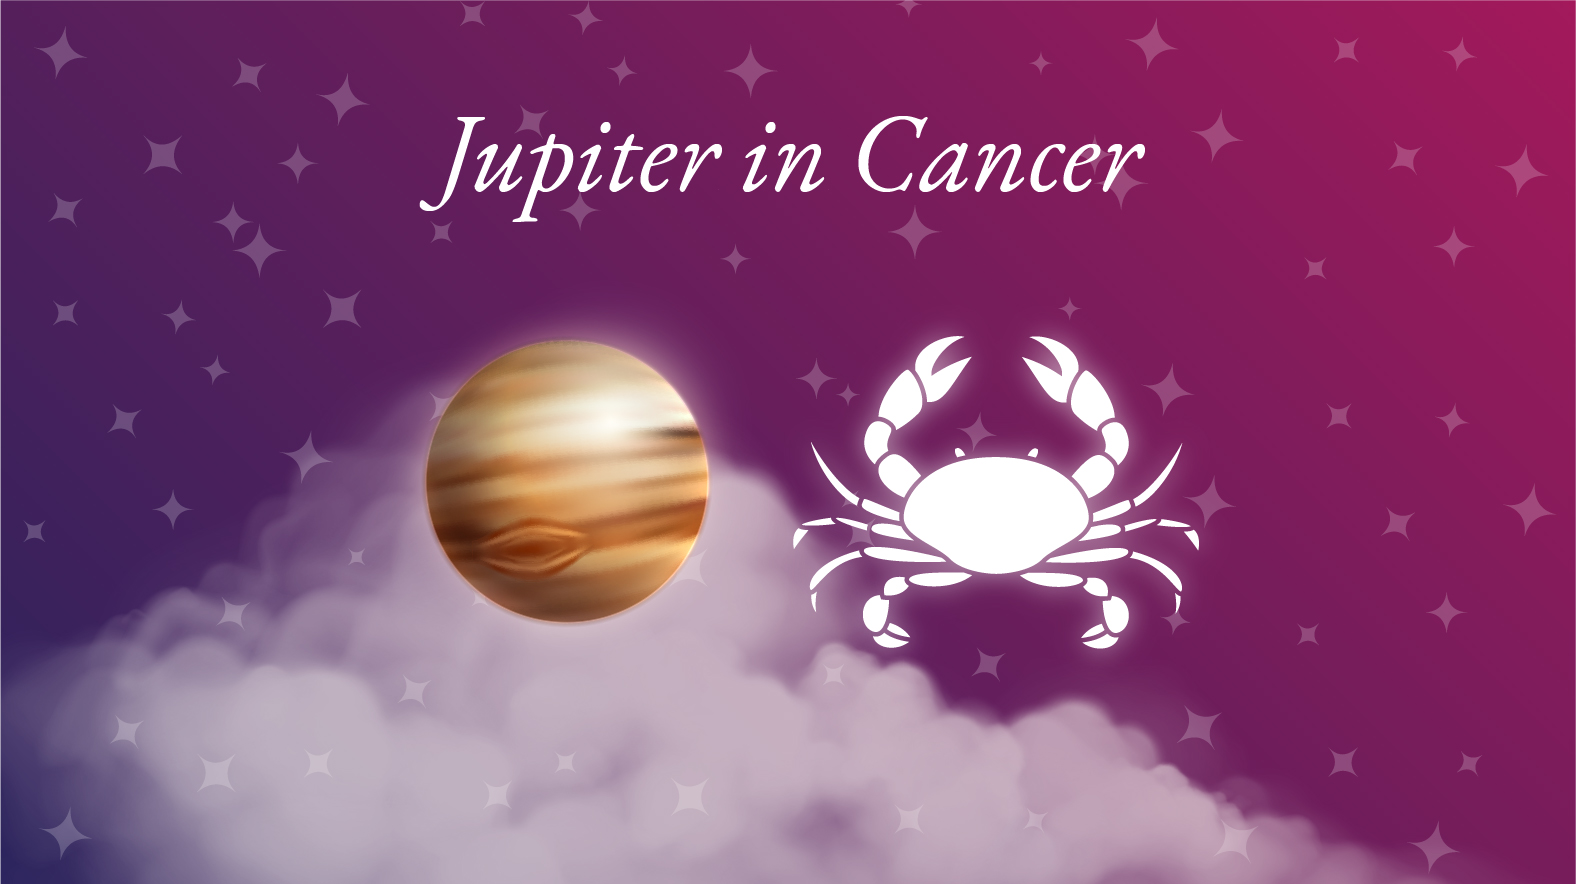 Jupiter in Cancer Meaning